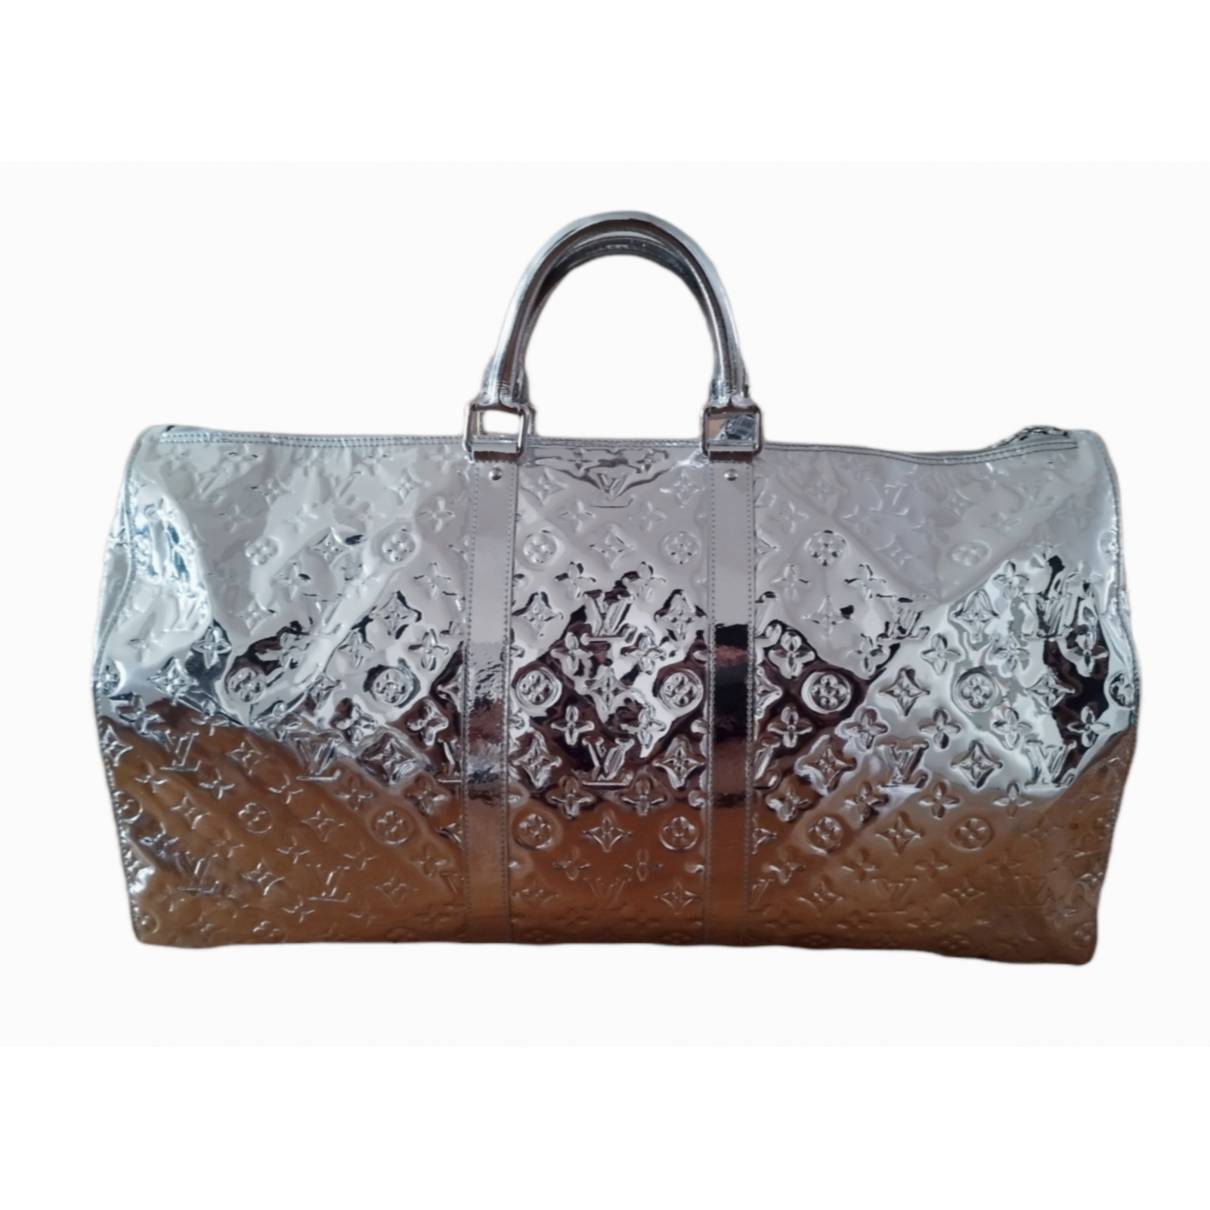 Miroir Keepall 55  Holdall bag, Women handbags, Louis vuitton keepall 55